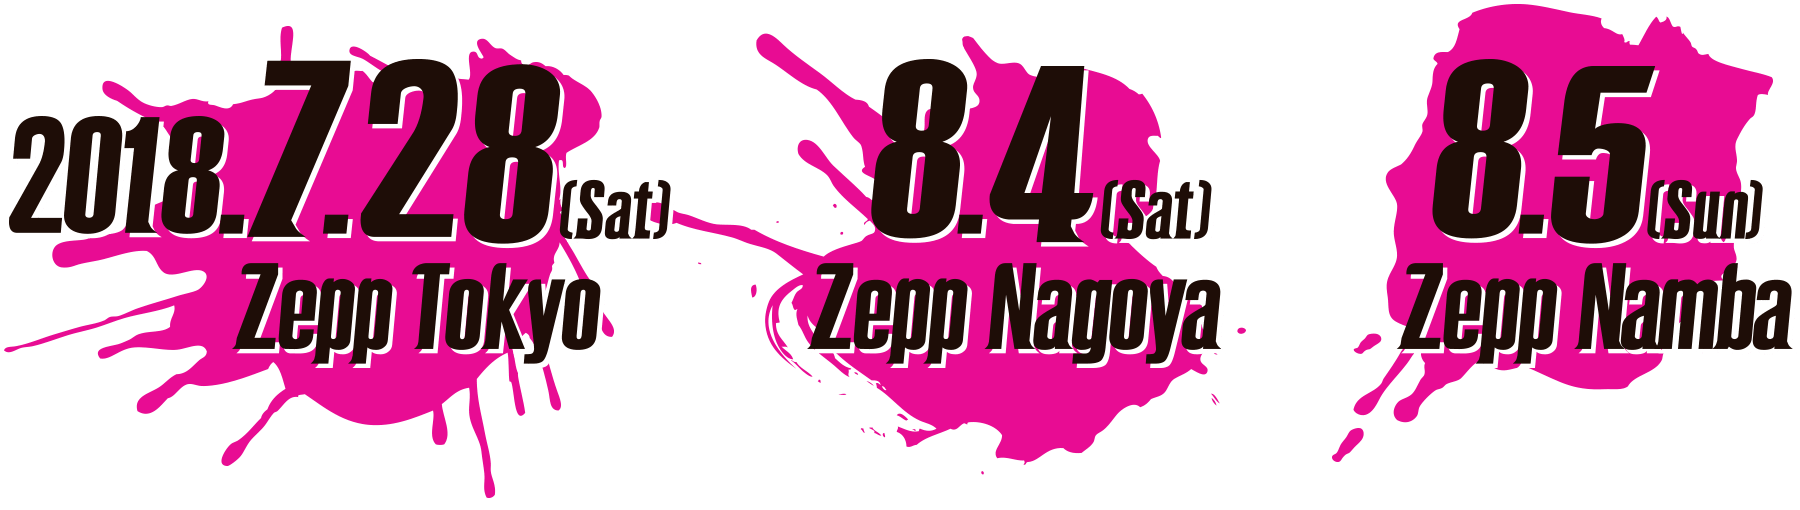 2018年7月28日(土)Zepp Tokyo・8月4日(土)Zepp Nagoya・8月5日(日)Zepp Namba